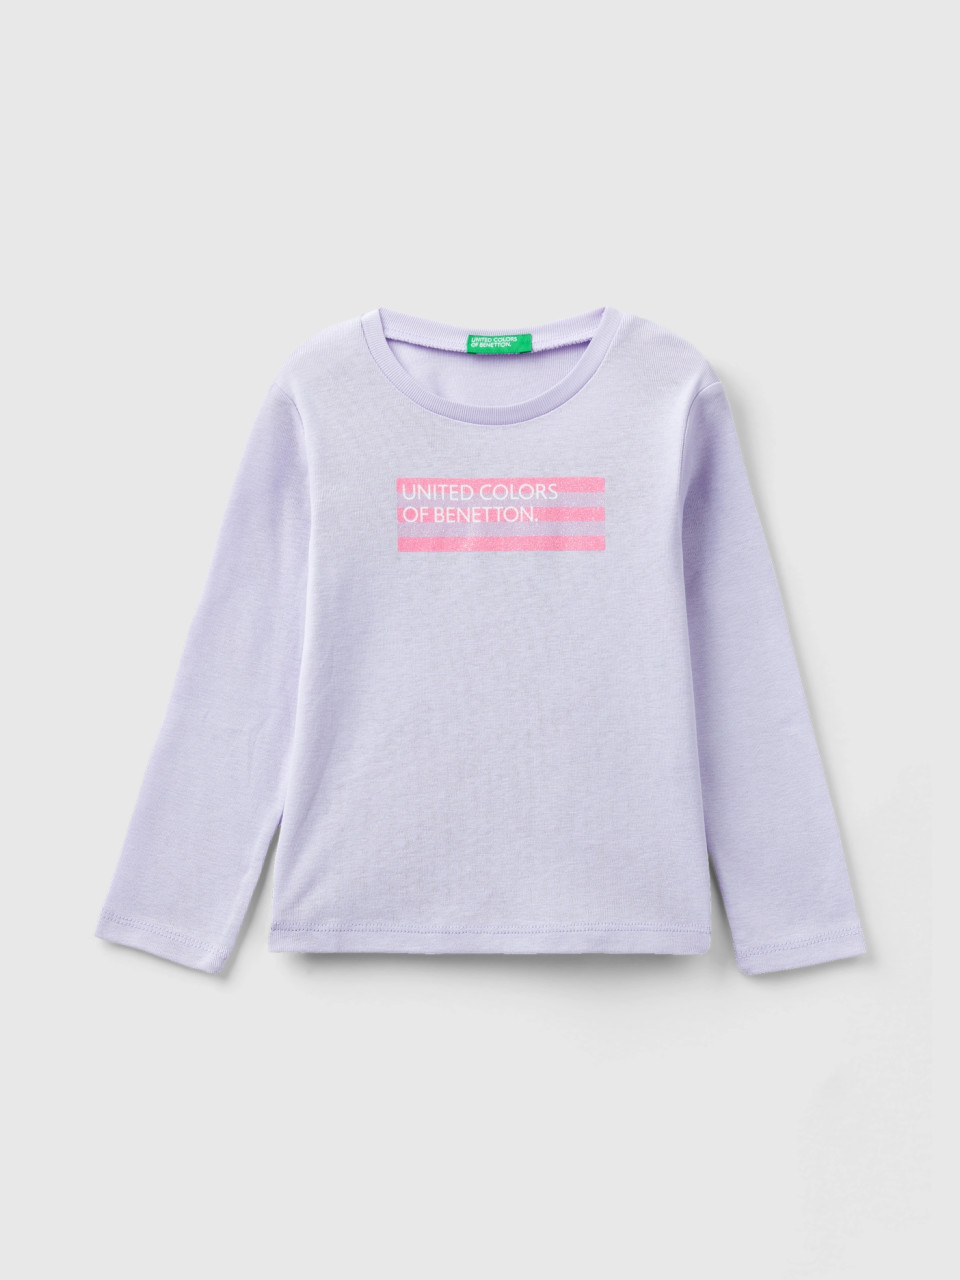 Benetton, Camiseta De Manga Larga Con Estampado De Glitter, Lila, Niños